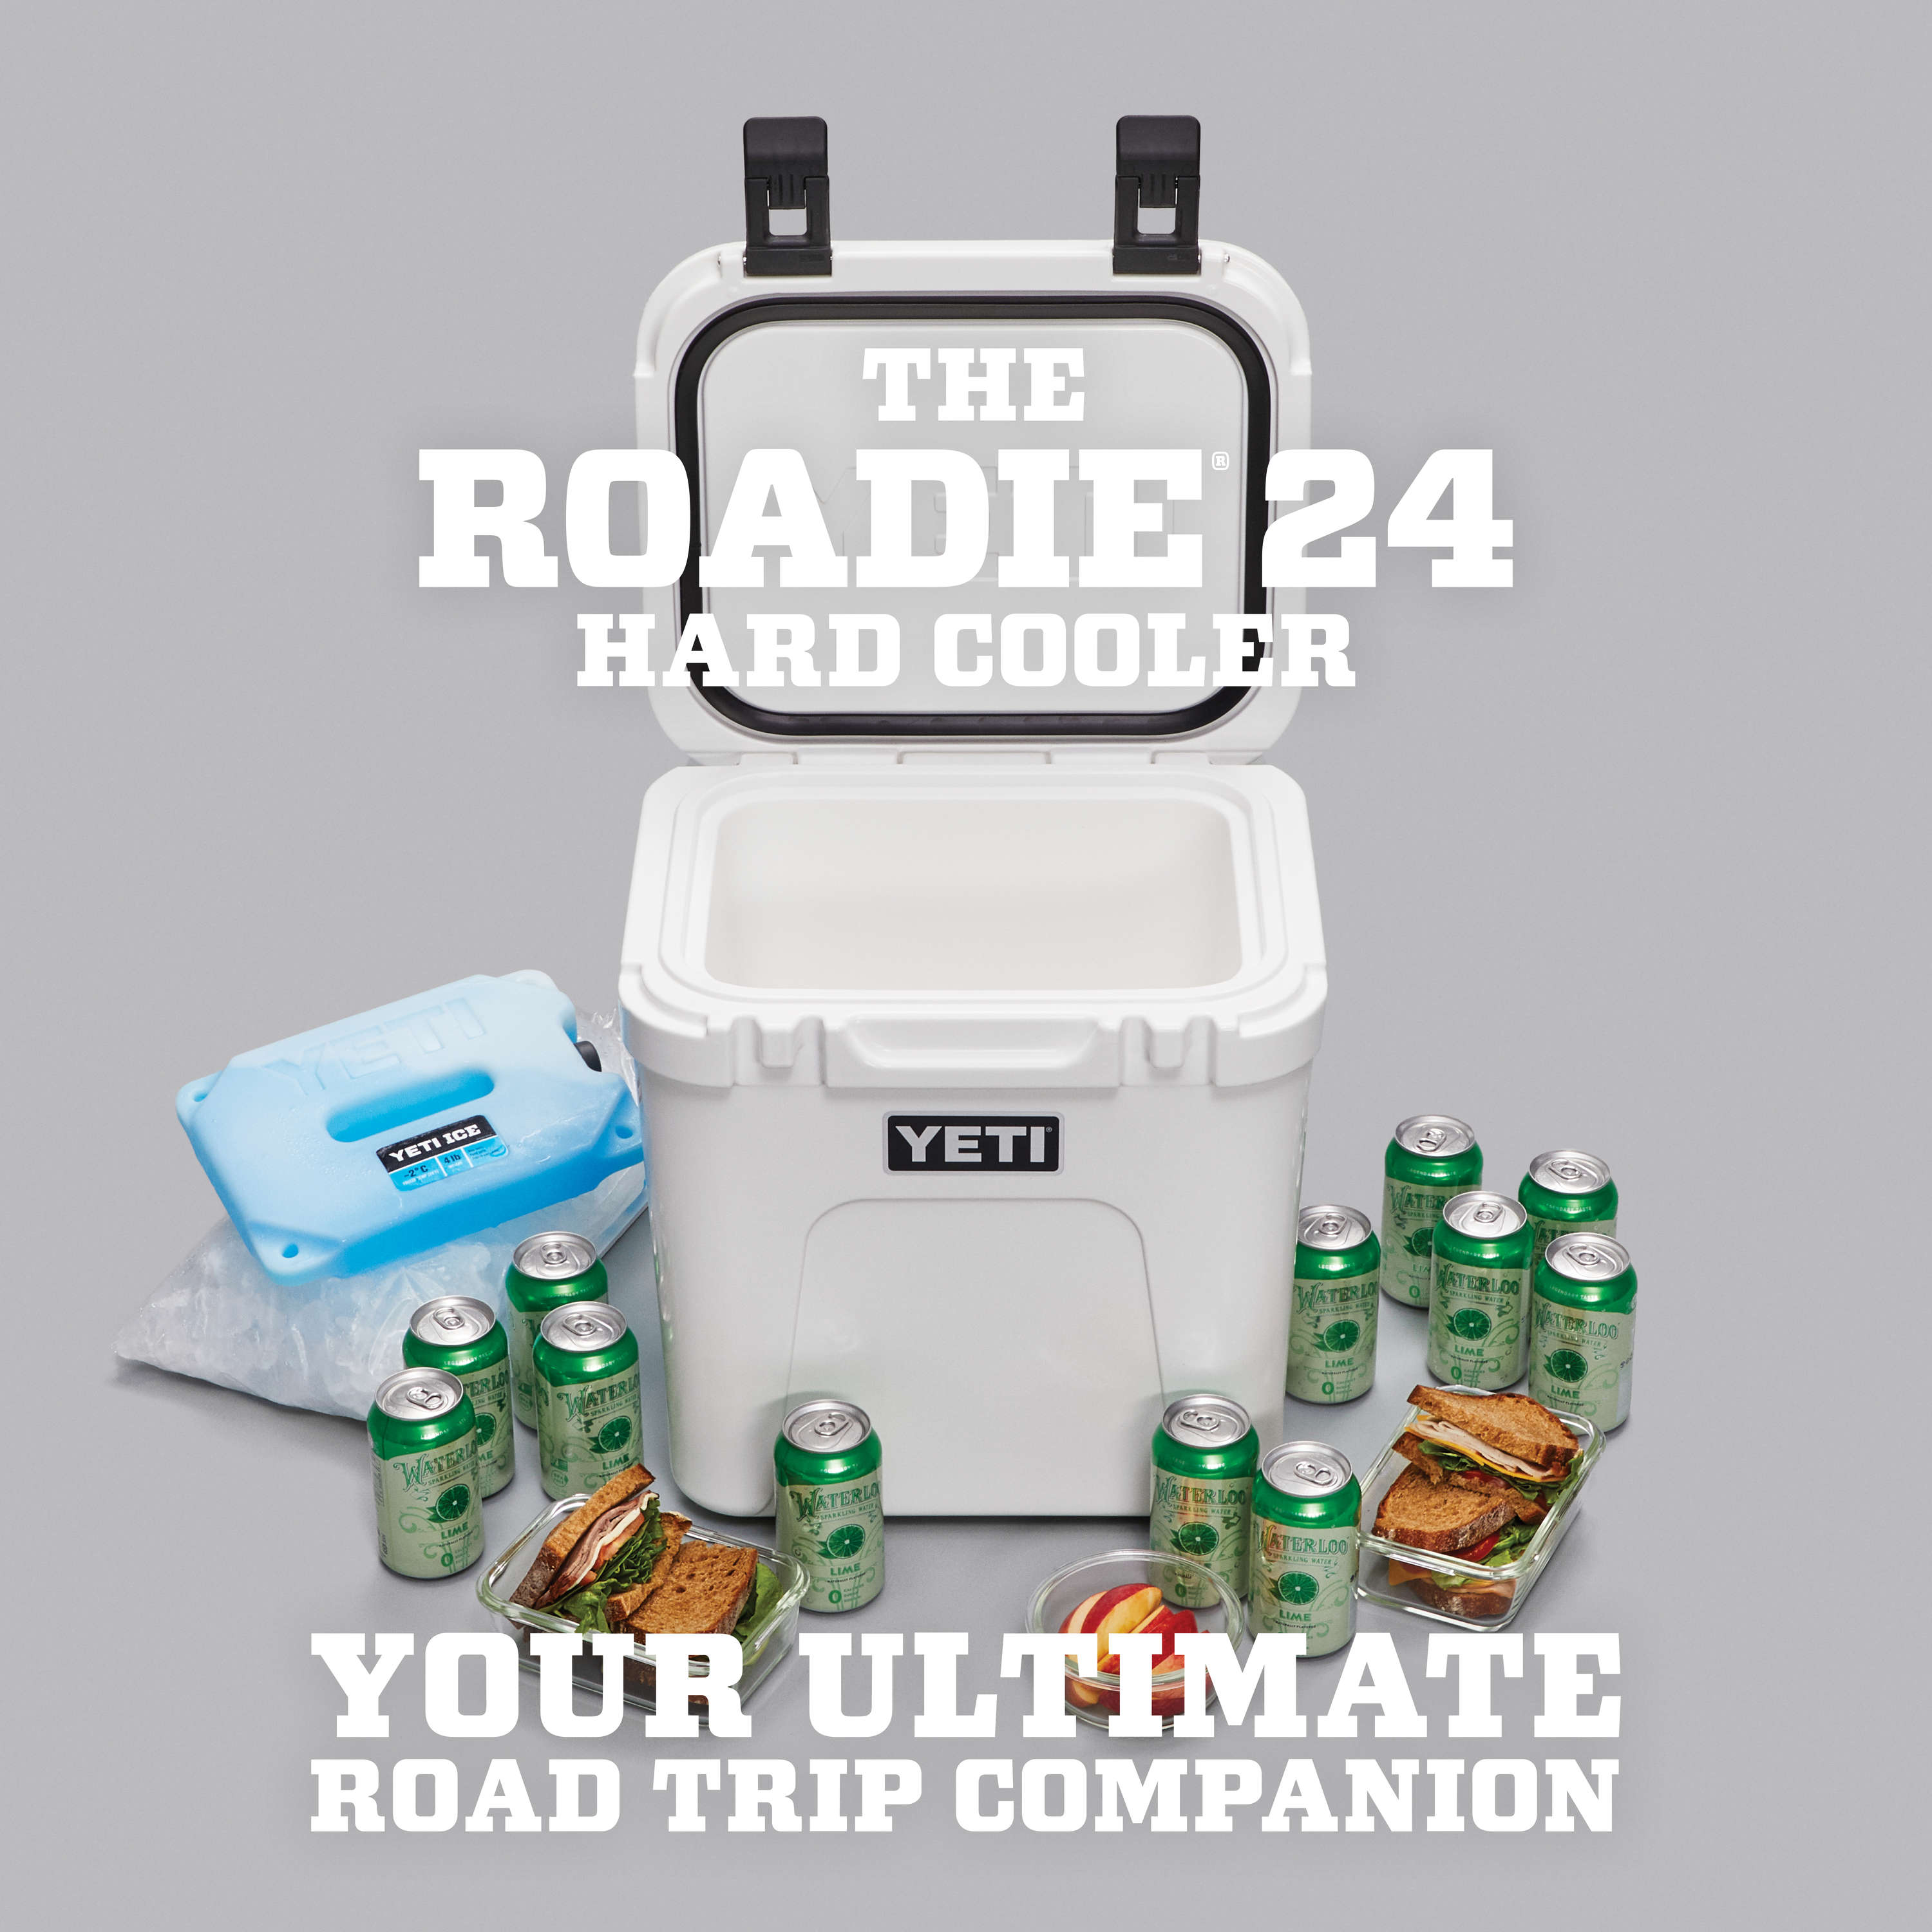 YETI Roadie 24 Cooler Review